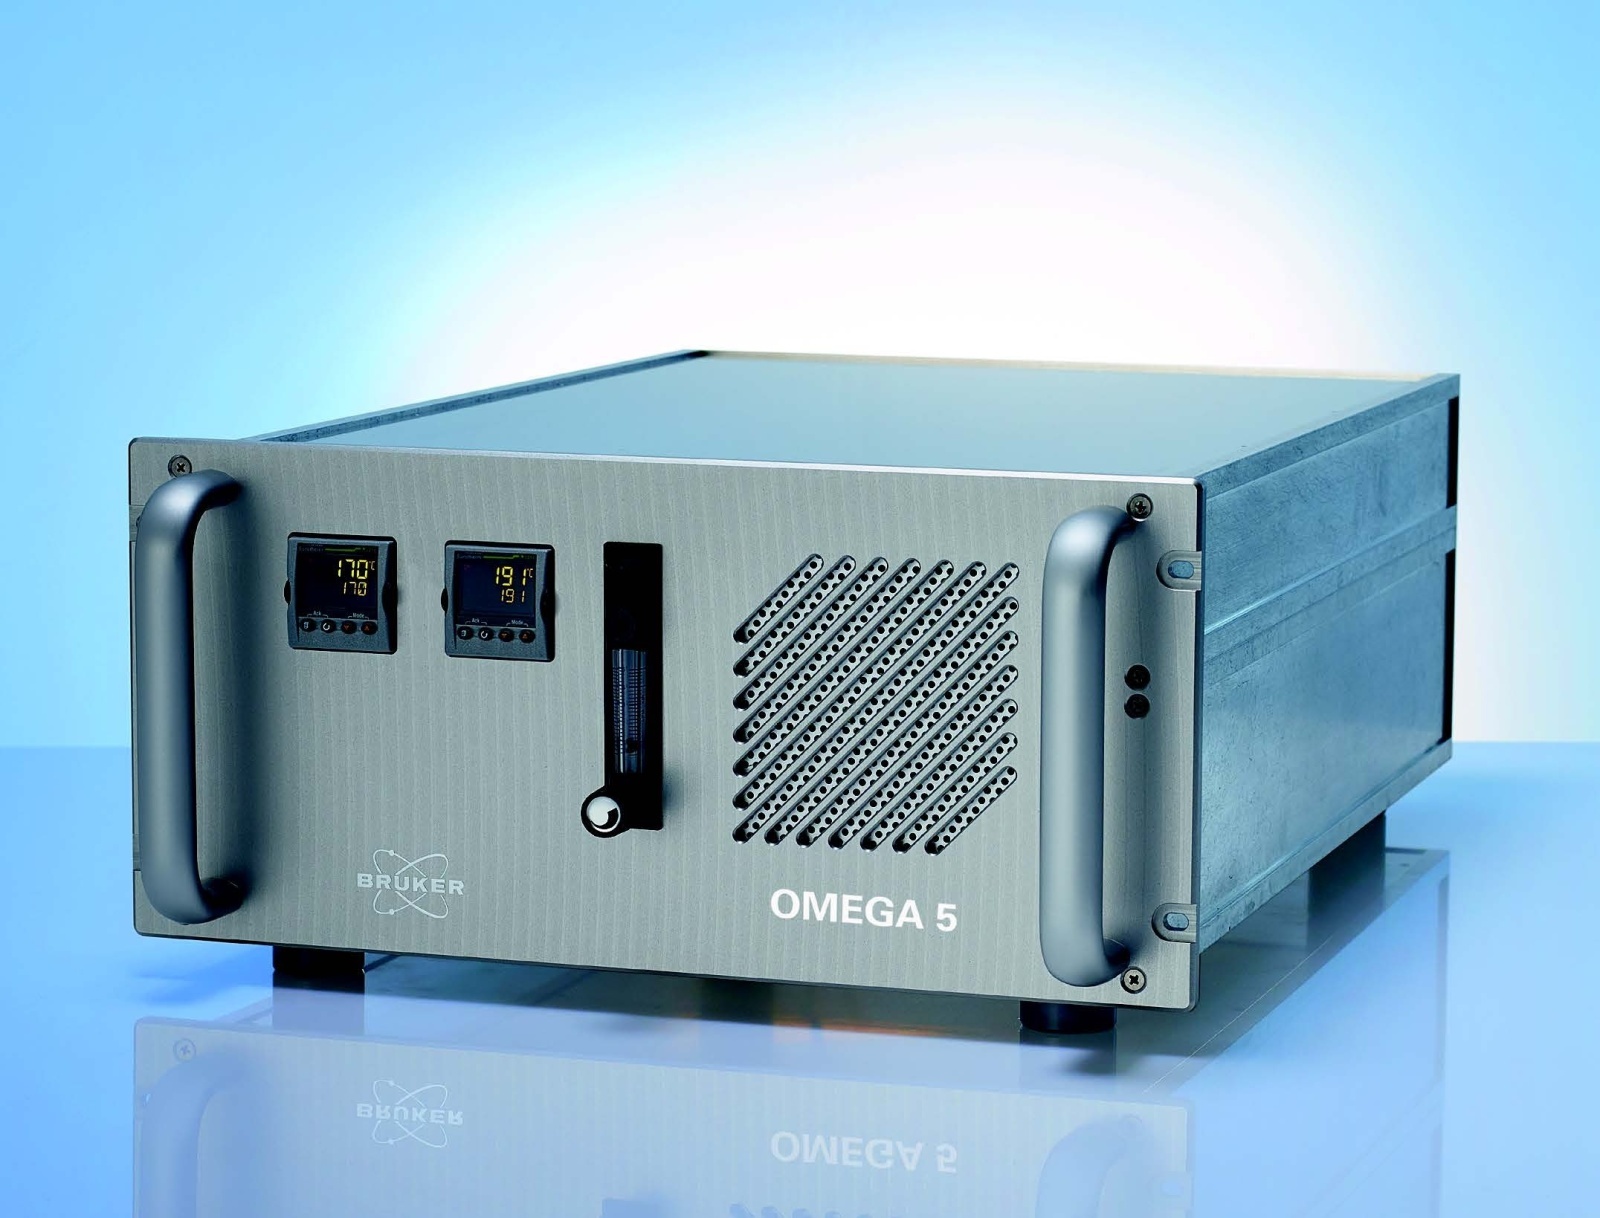 布鲁克OMEGA 5通用型气体分析仪的图片